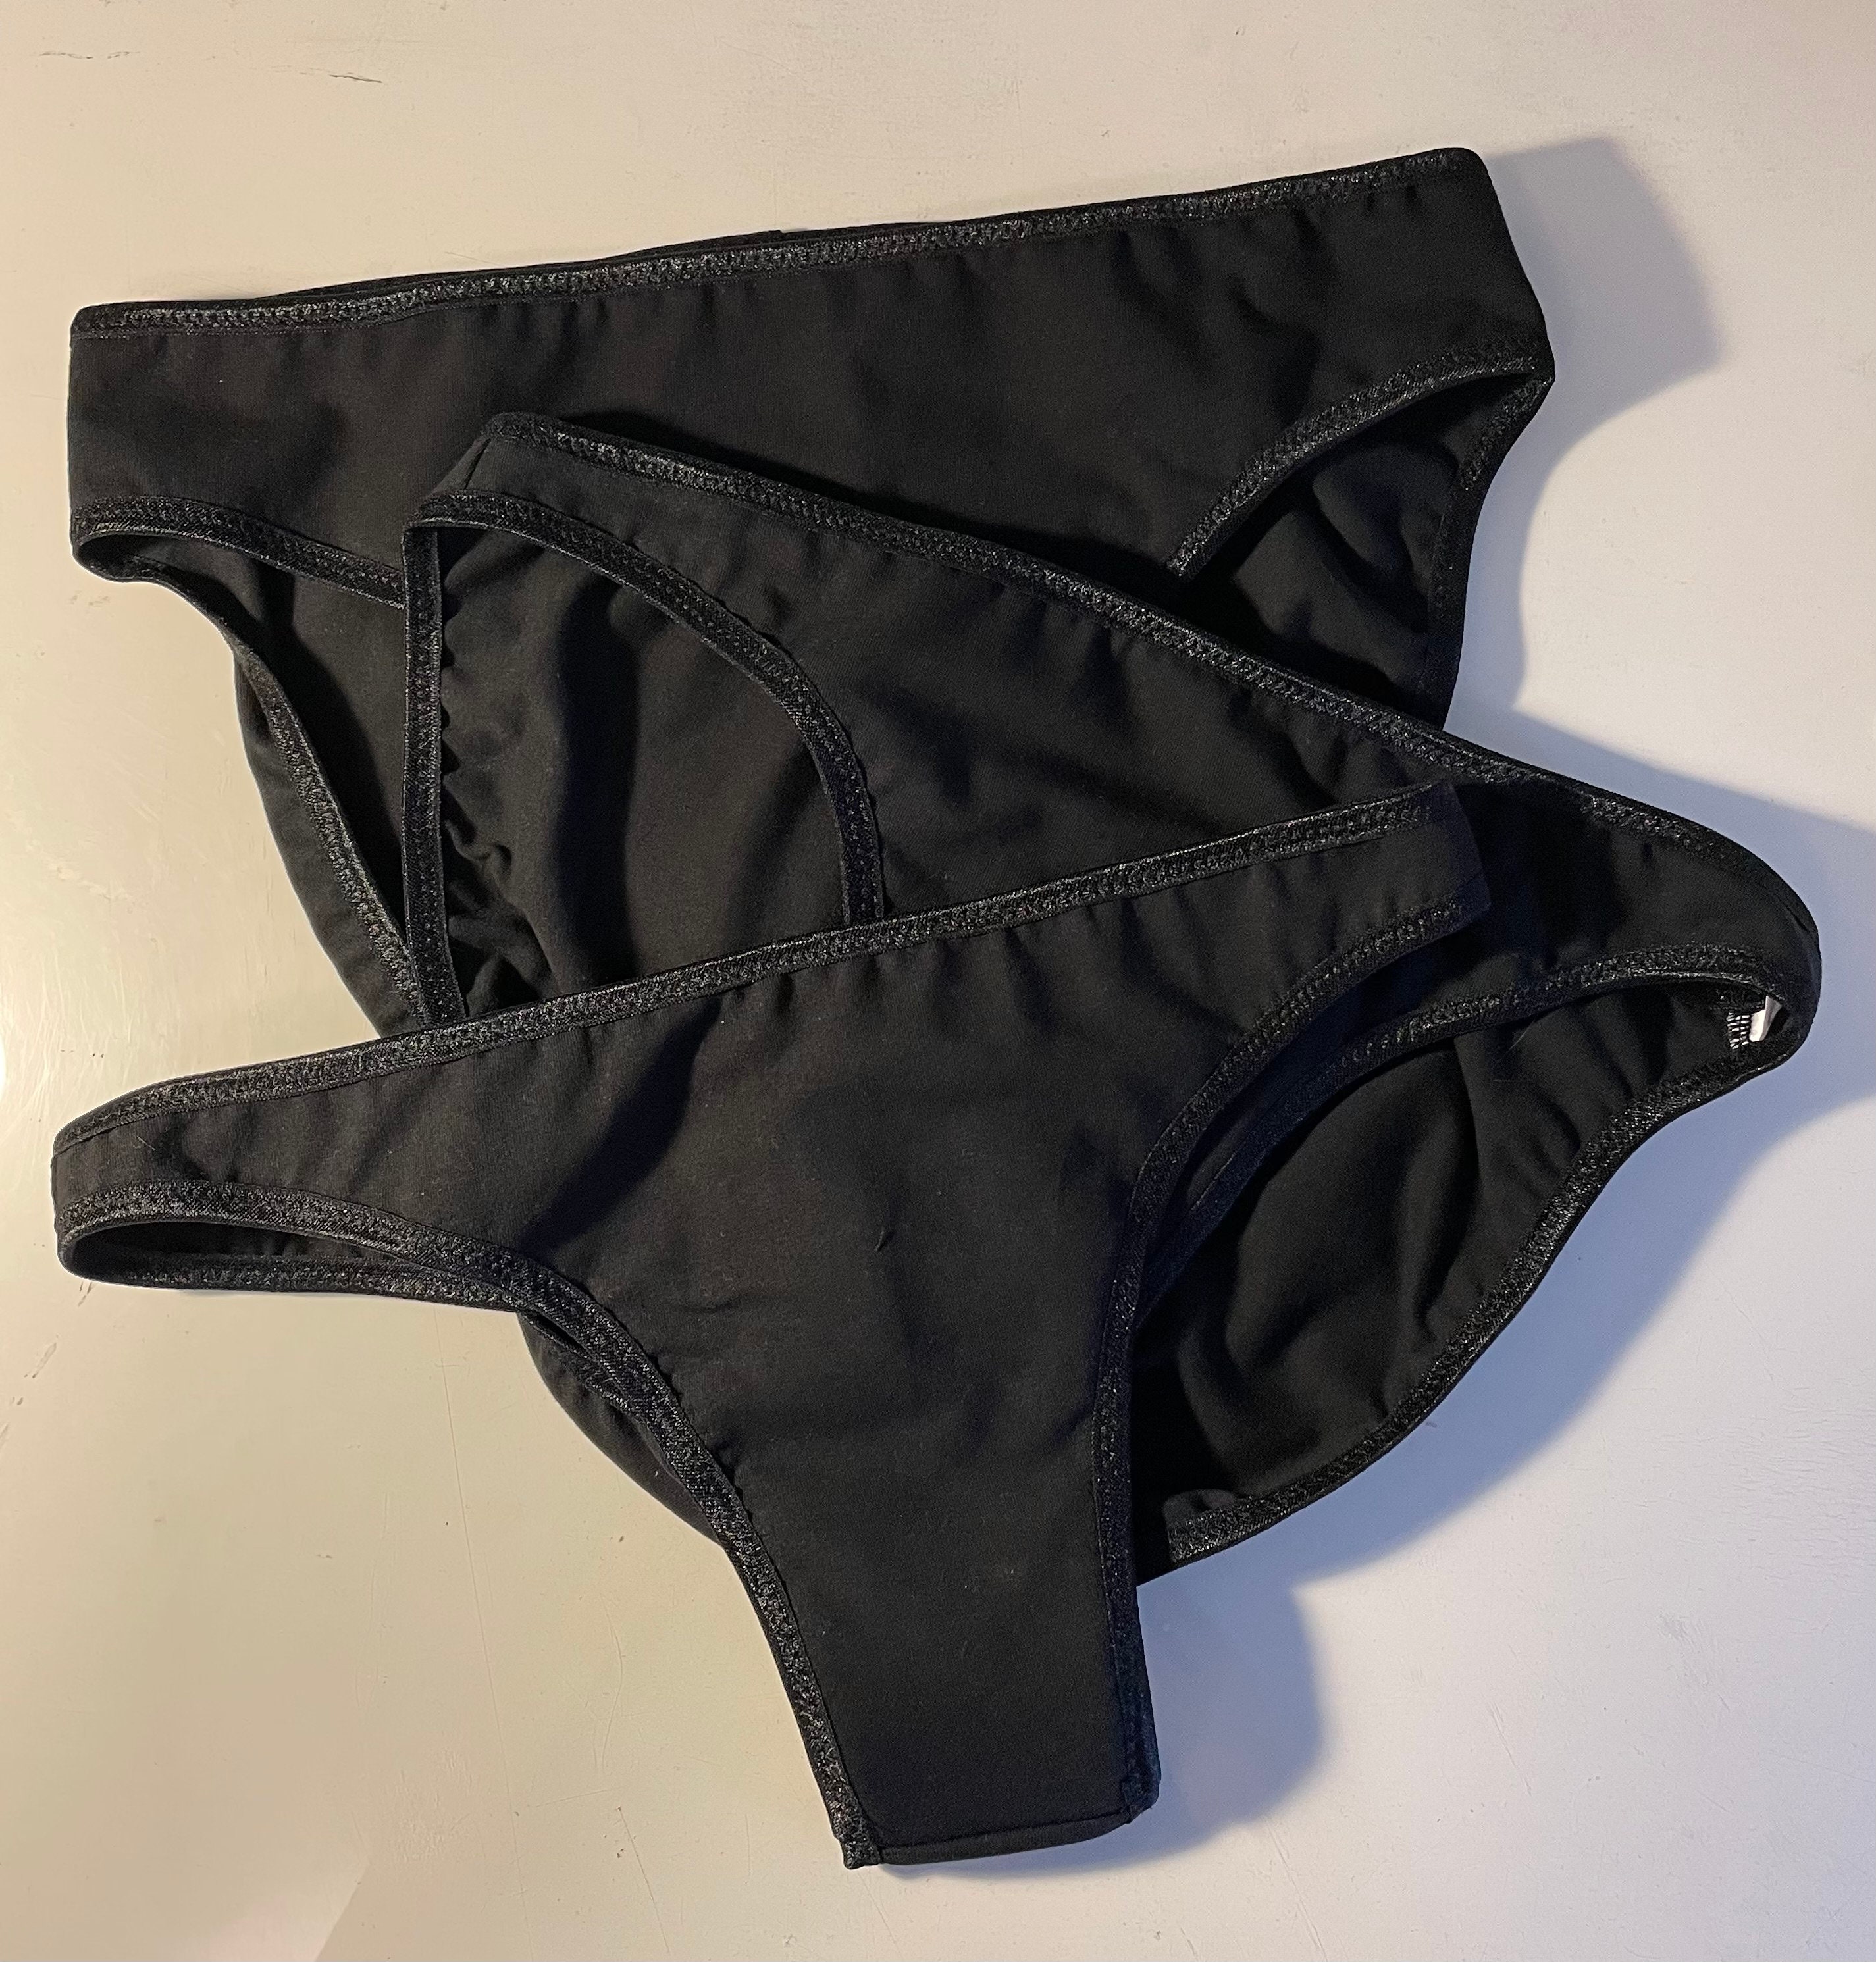 Trans M2F Underwear Enhancer, Camel Toe, Concealer. 